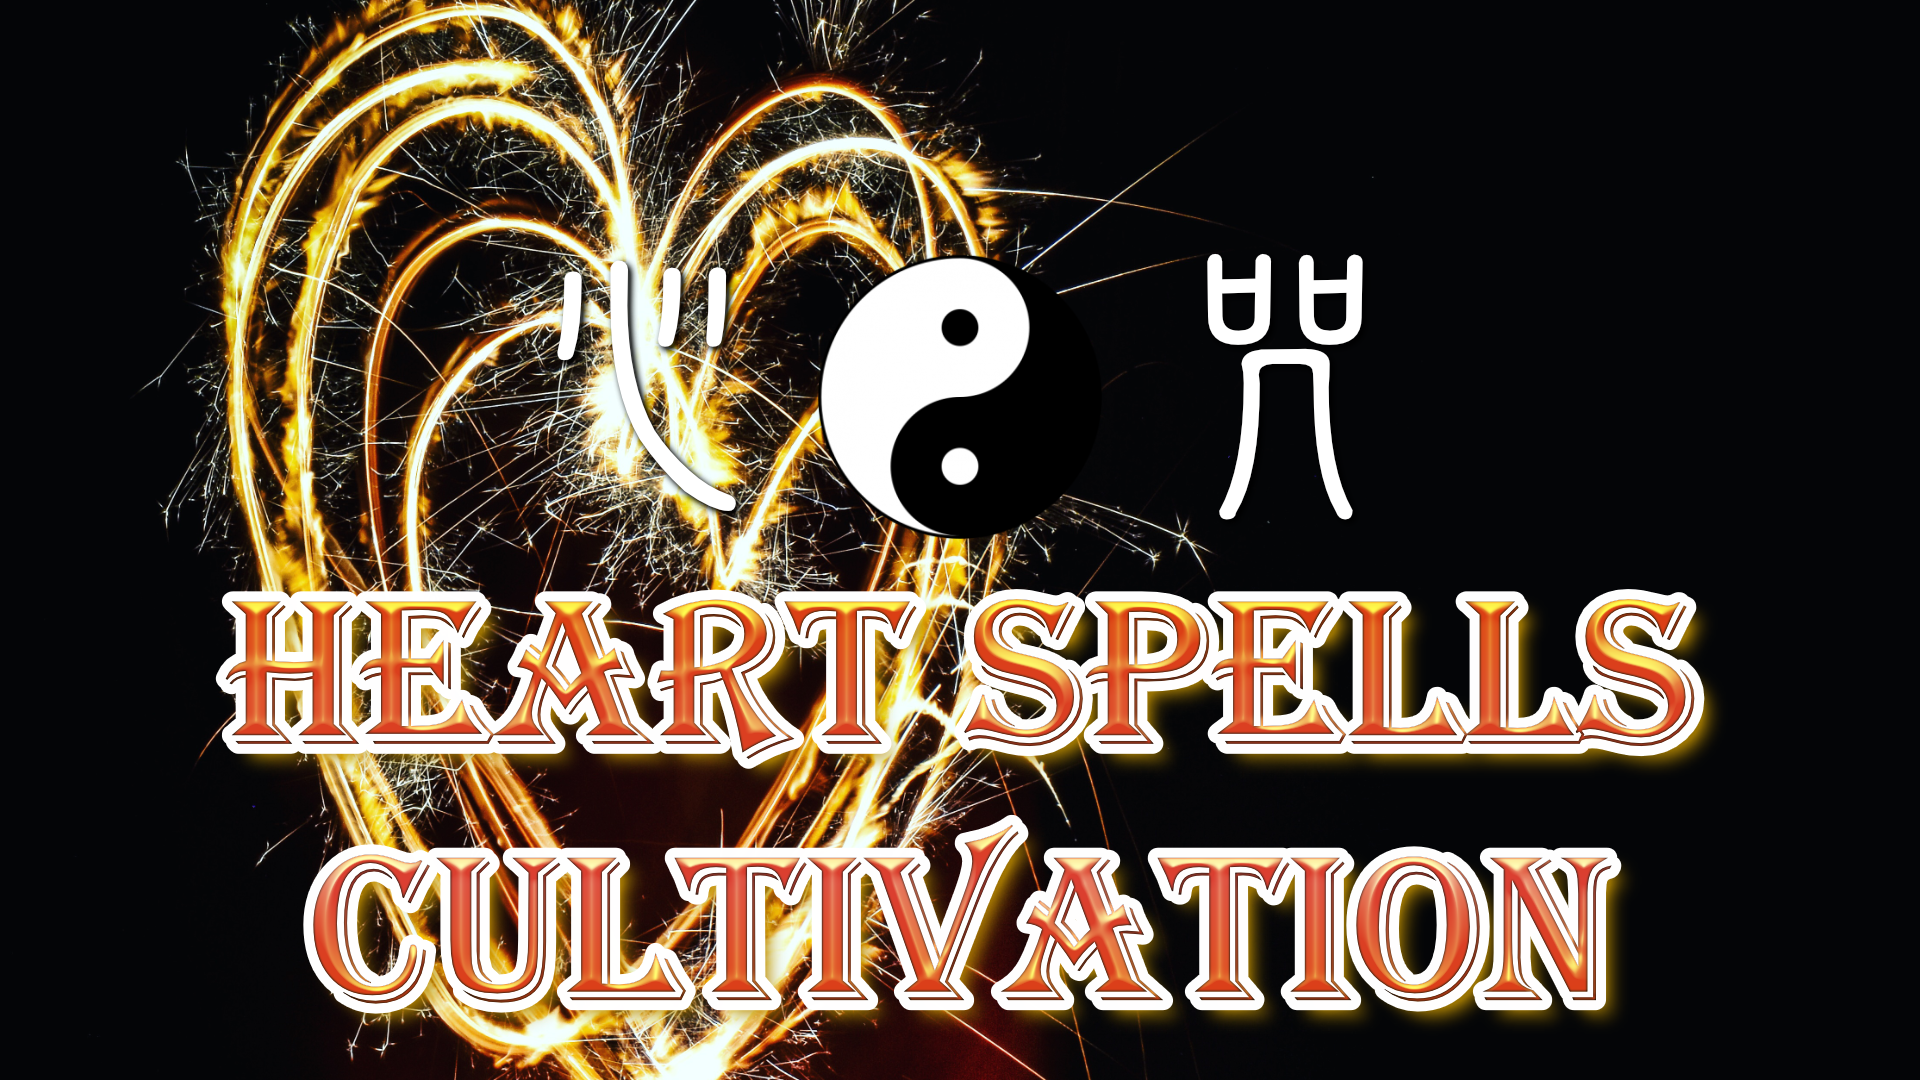 
                  Heart Spell Cultivation
                